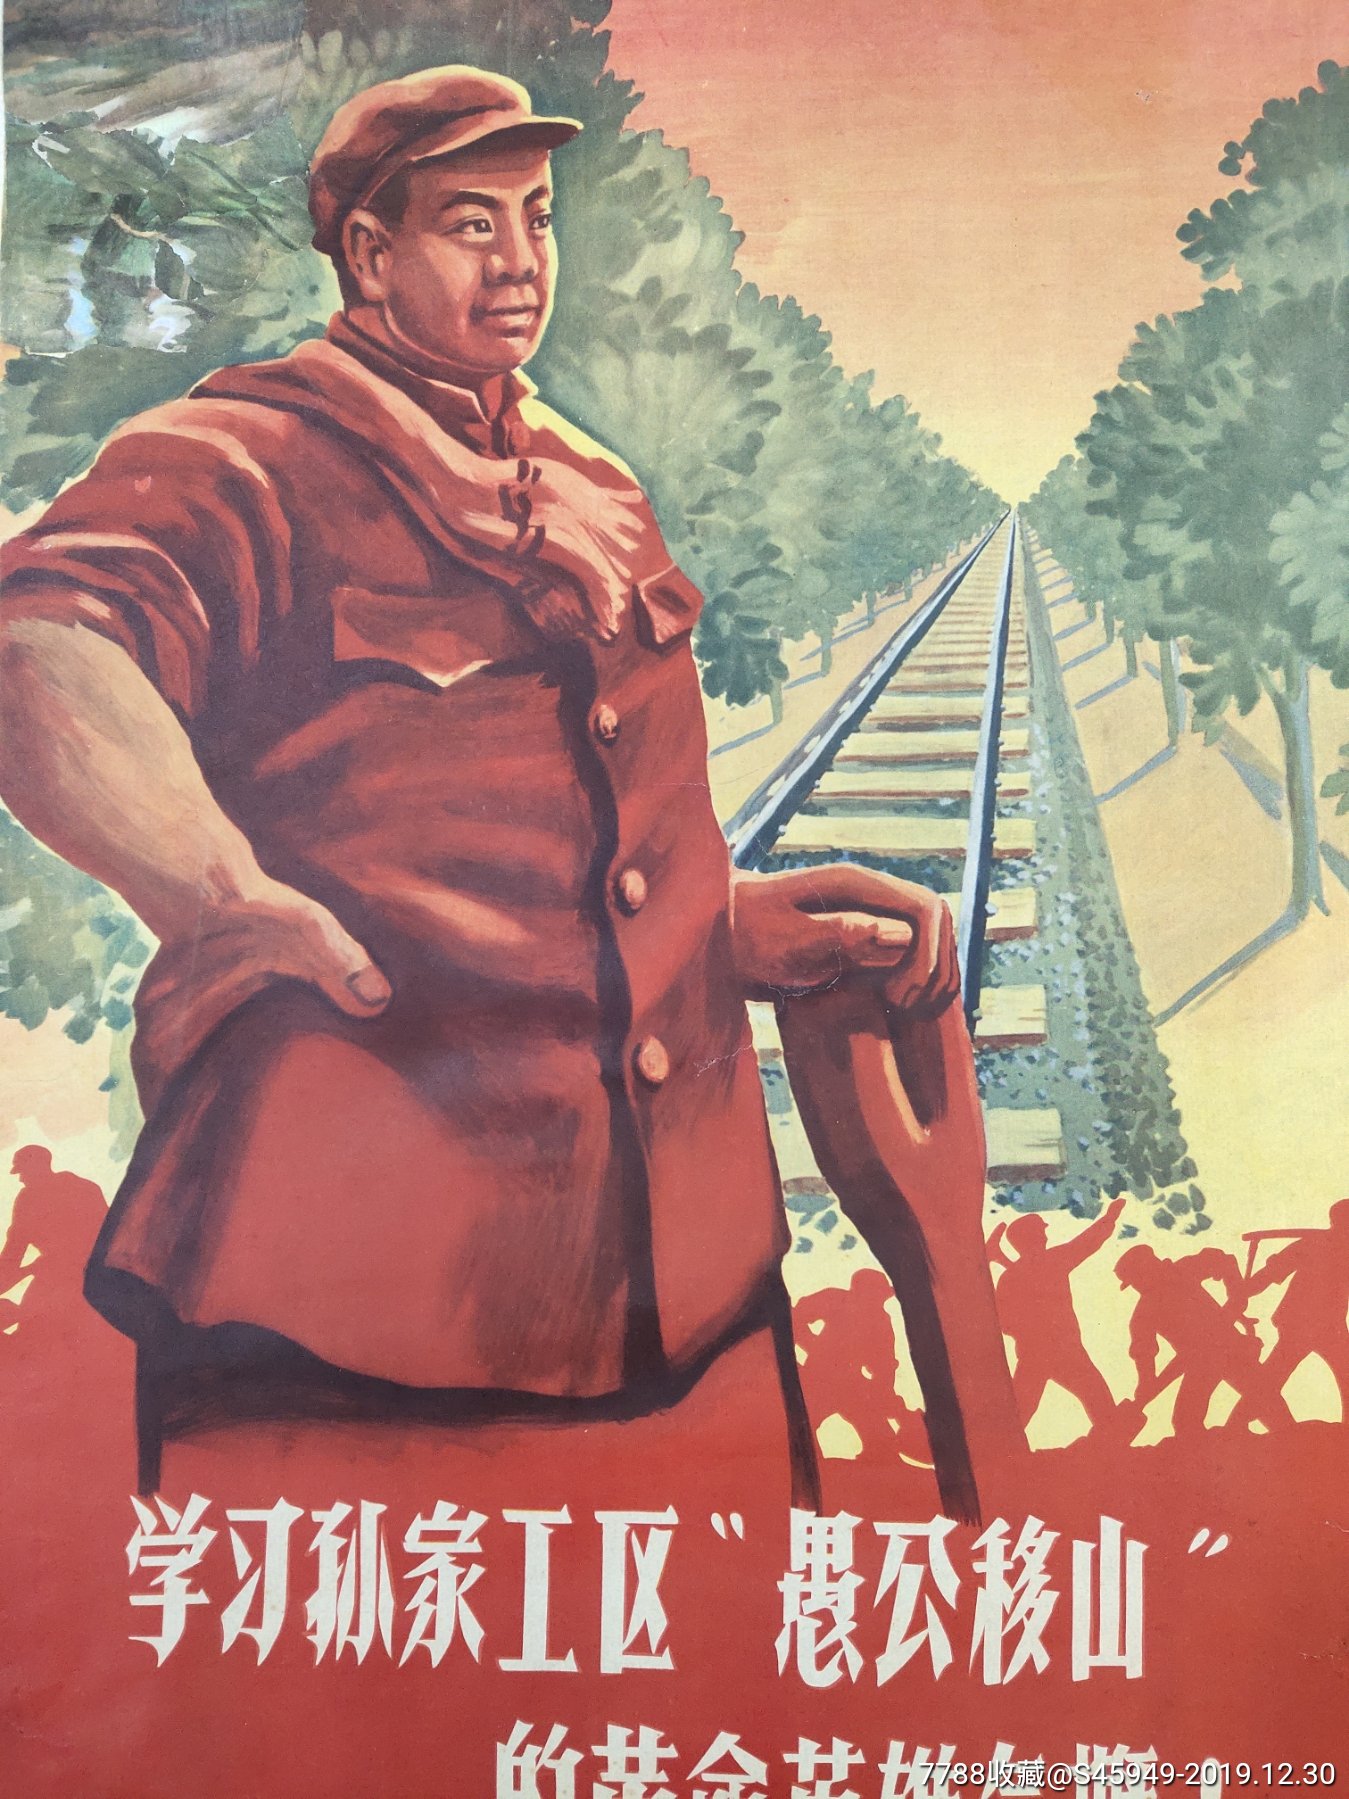 中国铁路工会柳州革委会宣传画,罕见(学*愚公移山英雄